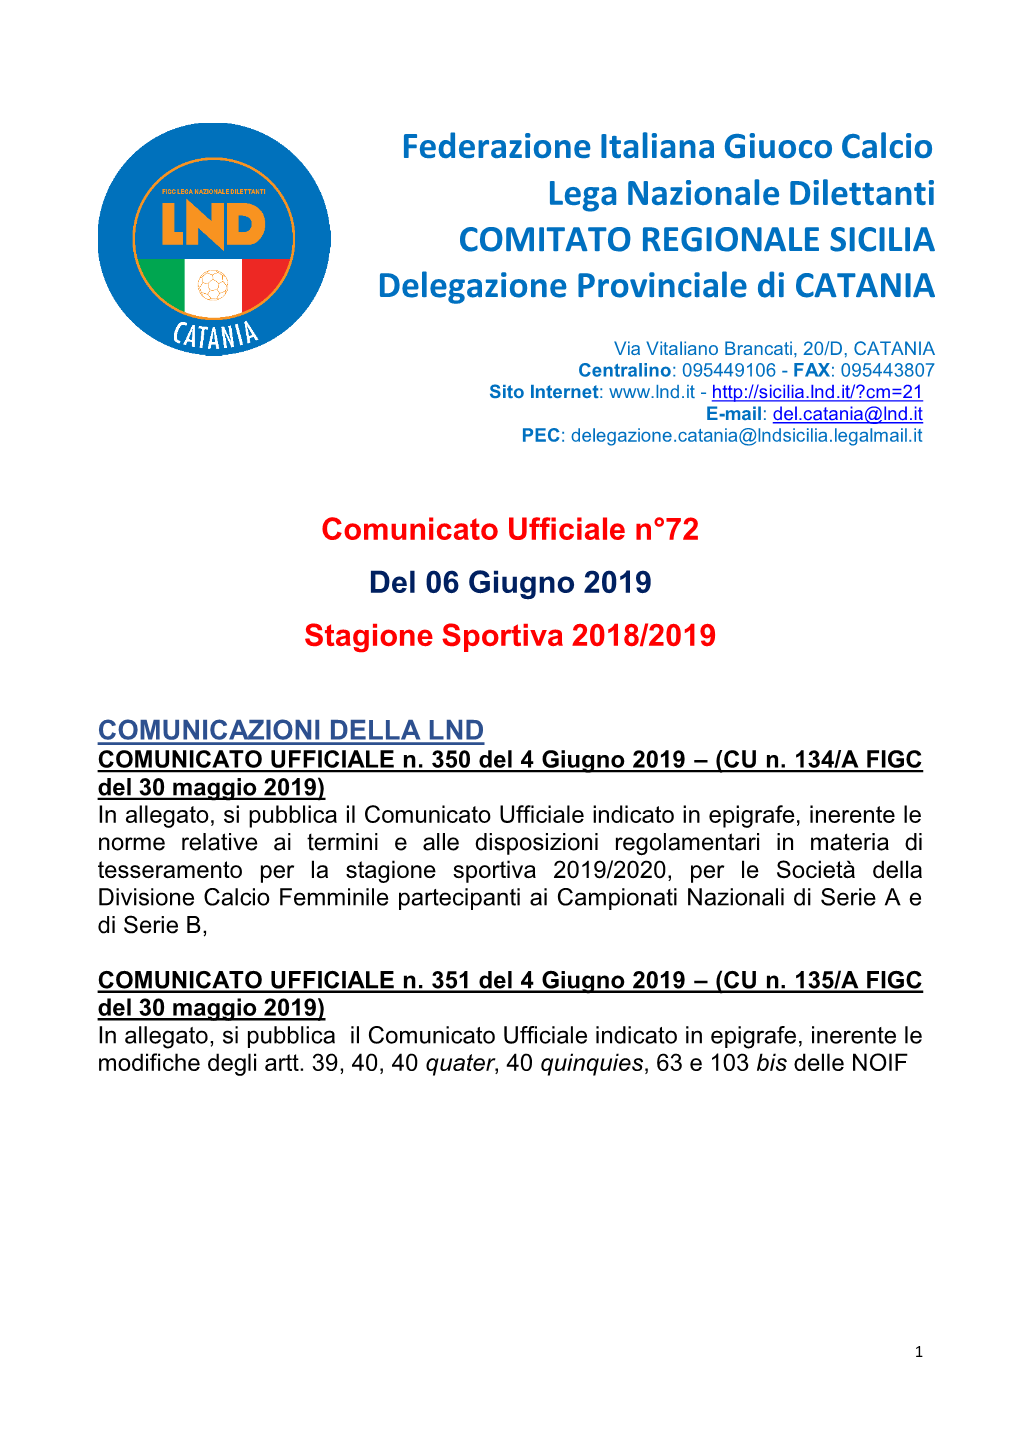 Federazione Italiana Giuoco Calcio Lega Nazionale Dilettanti COMITATO REGIONALE SICILIA Delegazione Provinciale Di CATANIA